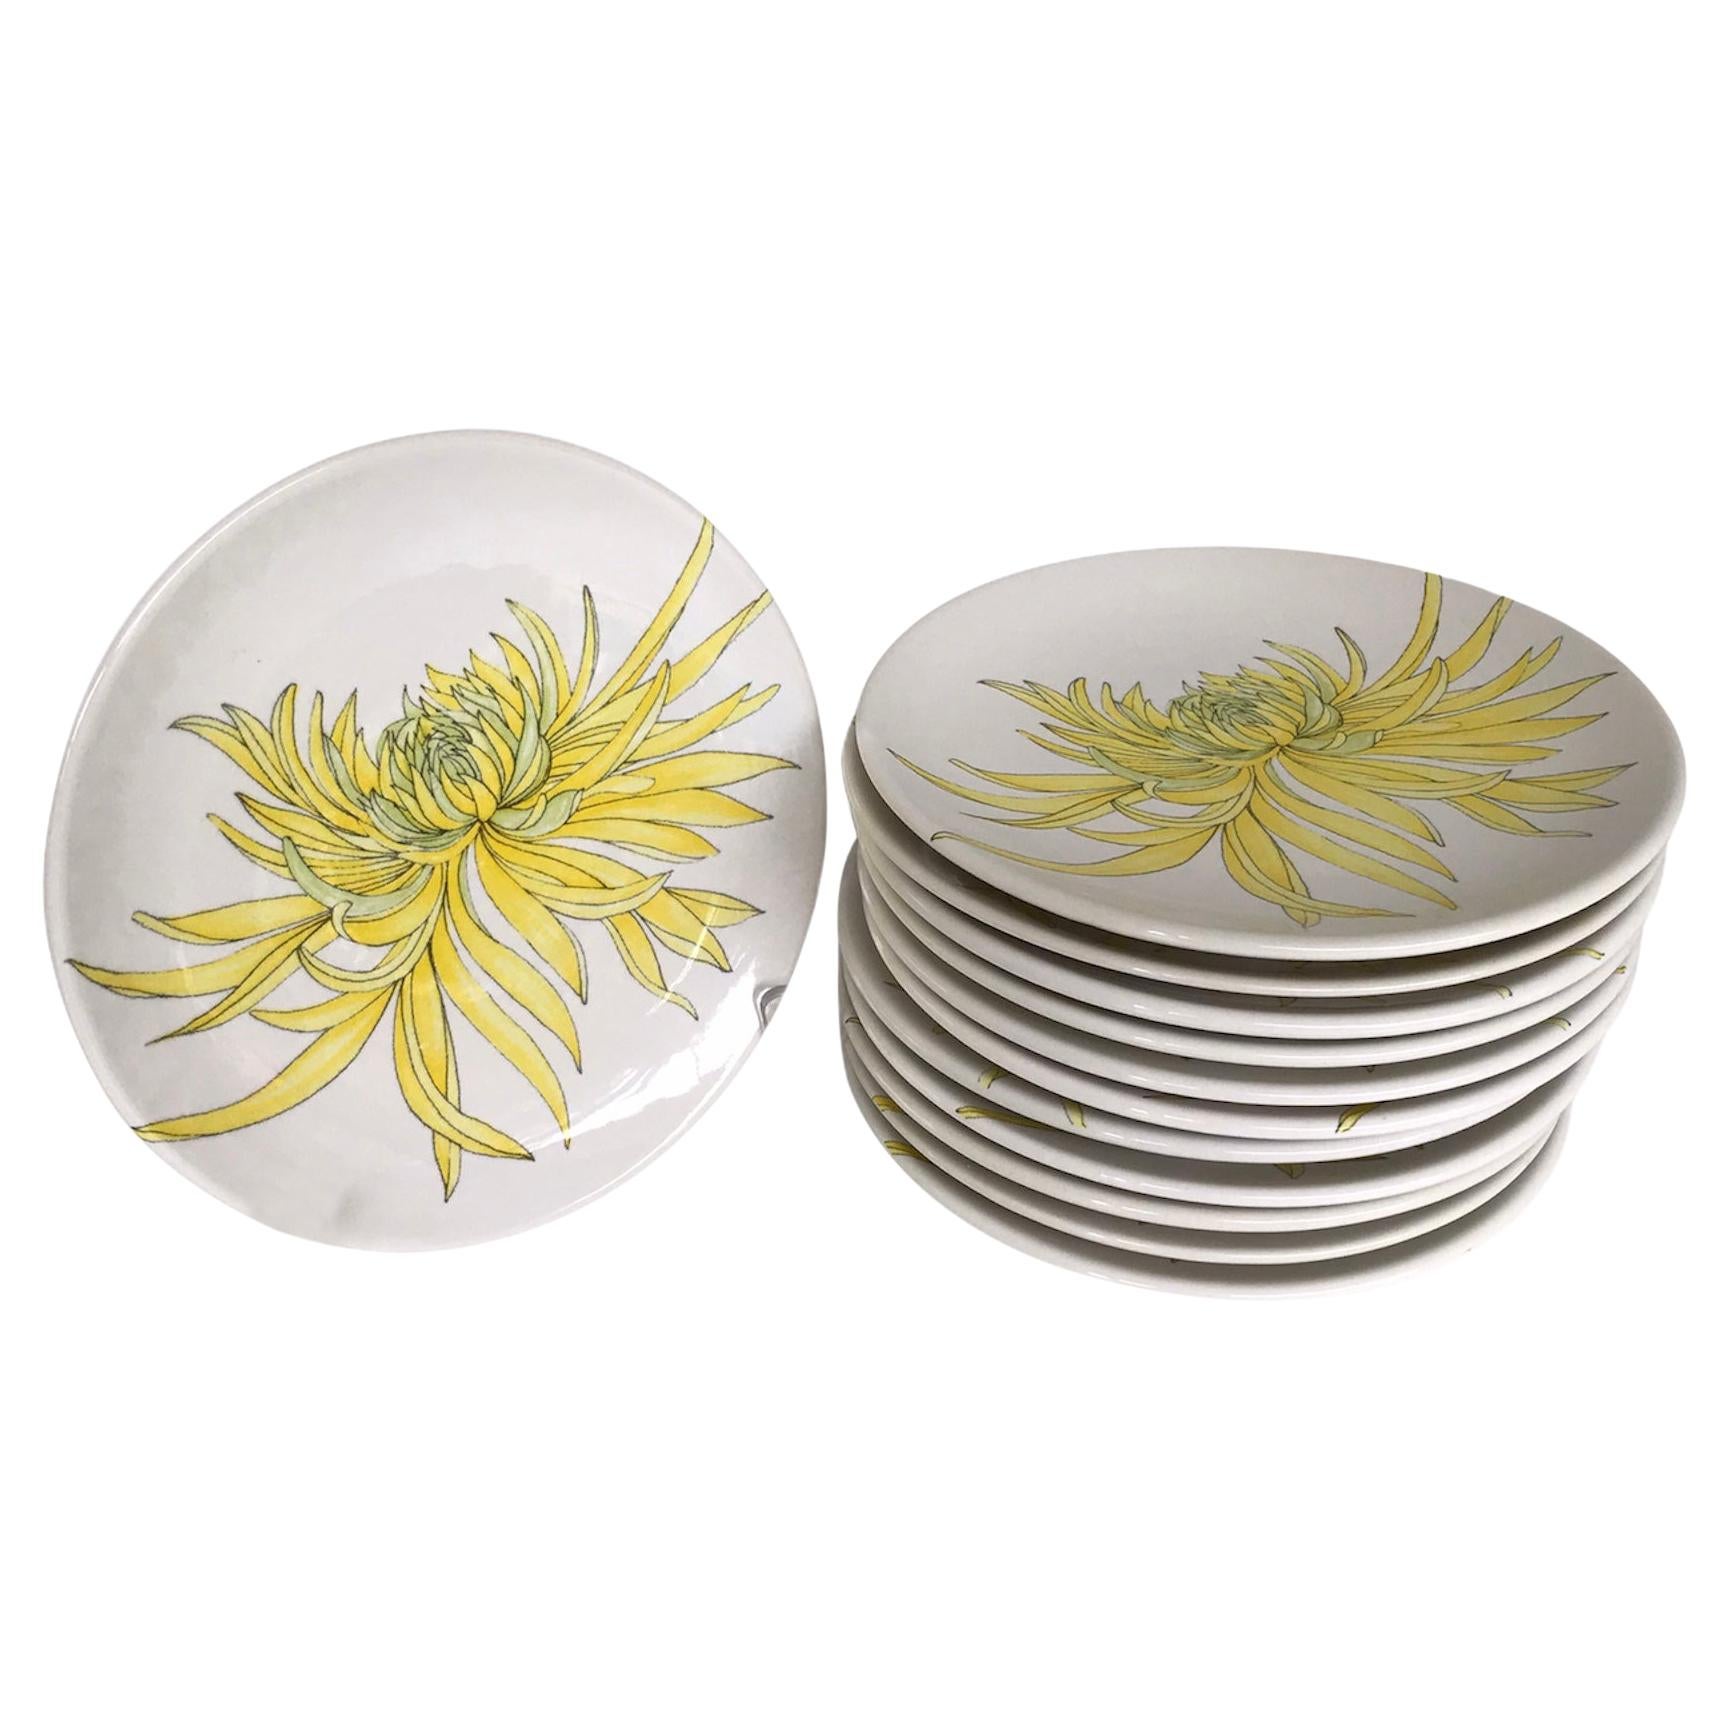 Modern Italian 12 Plates Chrysanthemum Design by Ernestine Ceramiche, 1960